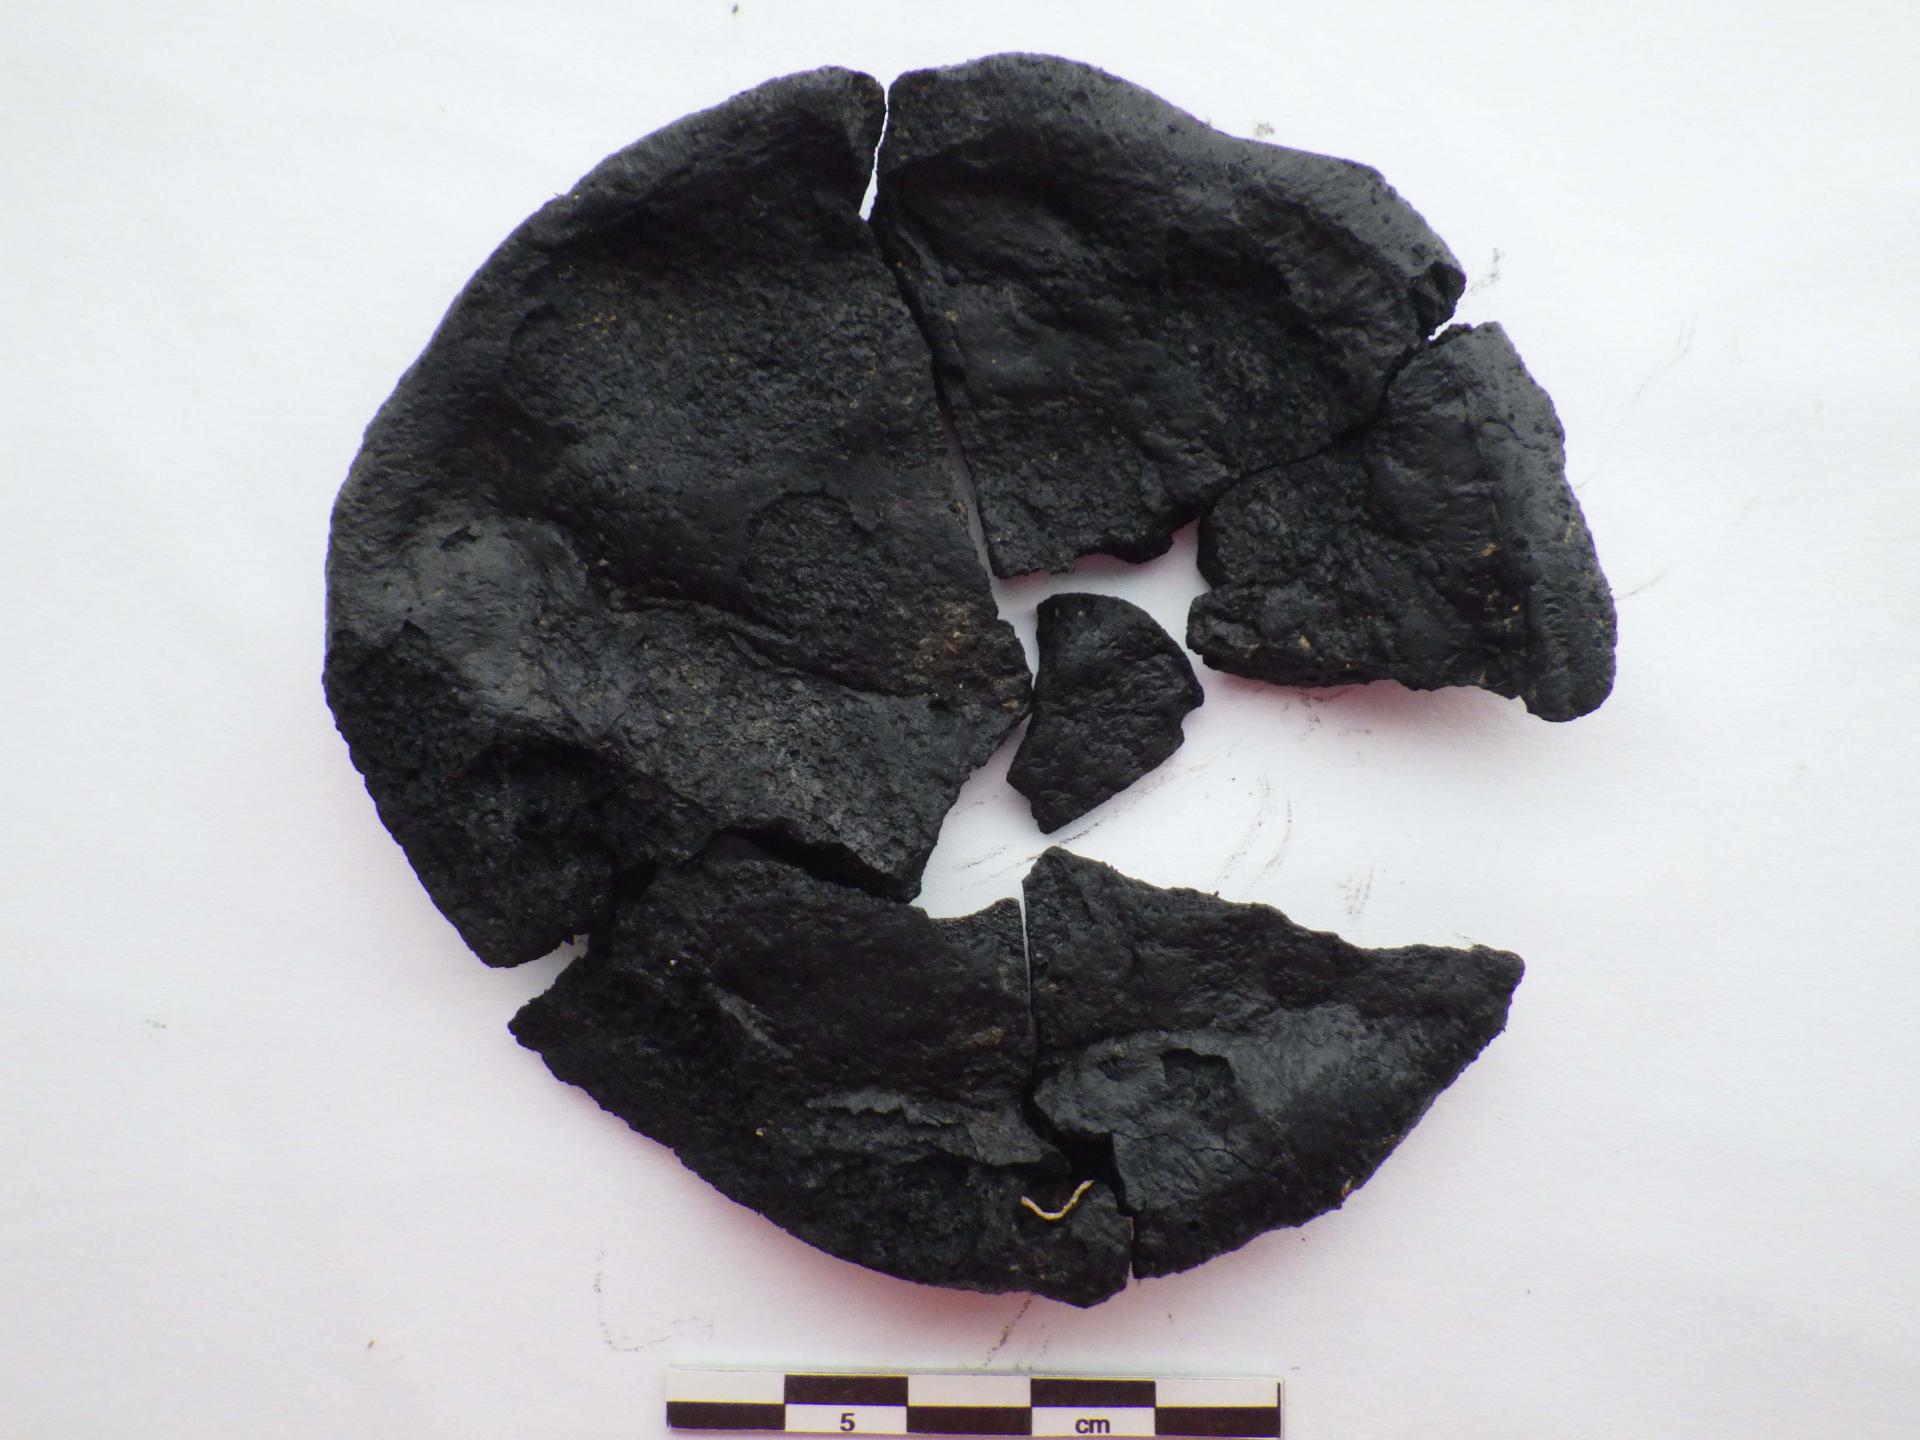 Fouille archéologique : découverte d’une galette de pain carbonisée du Ier siècle